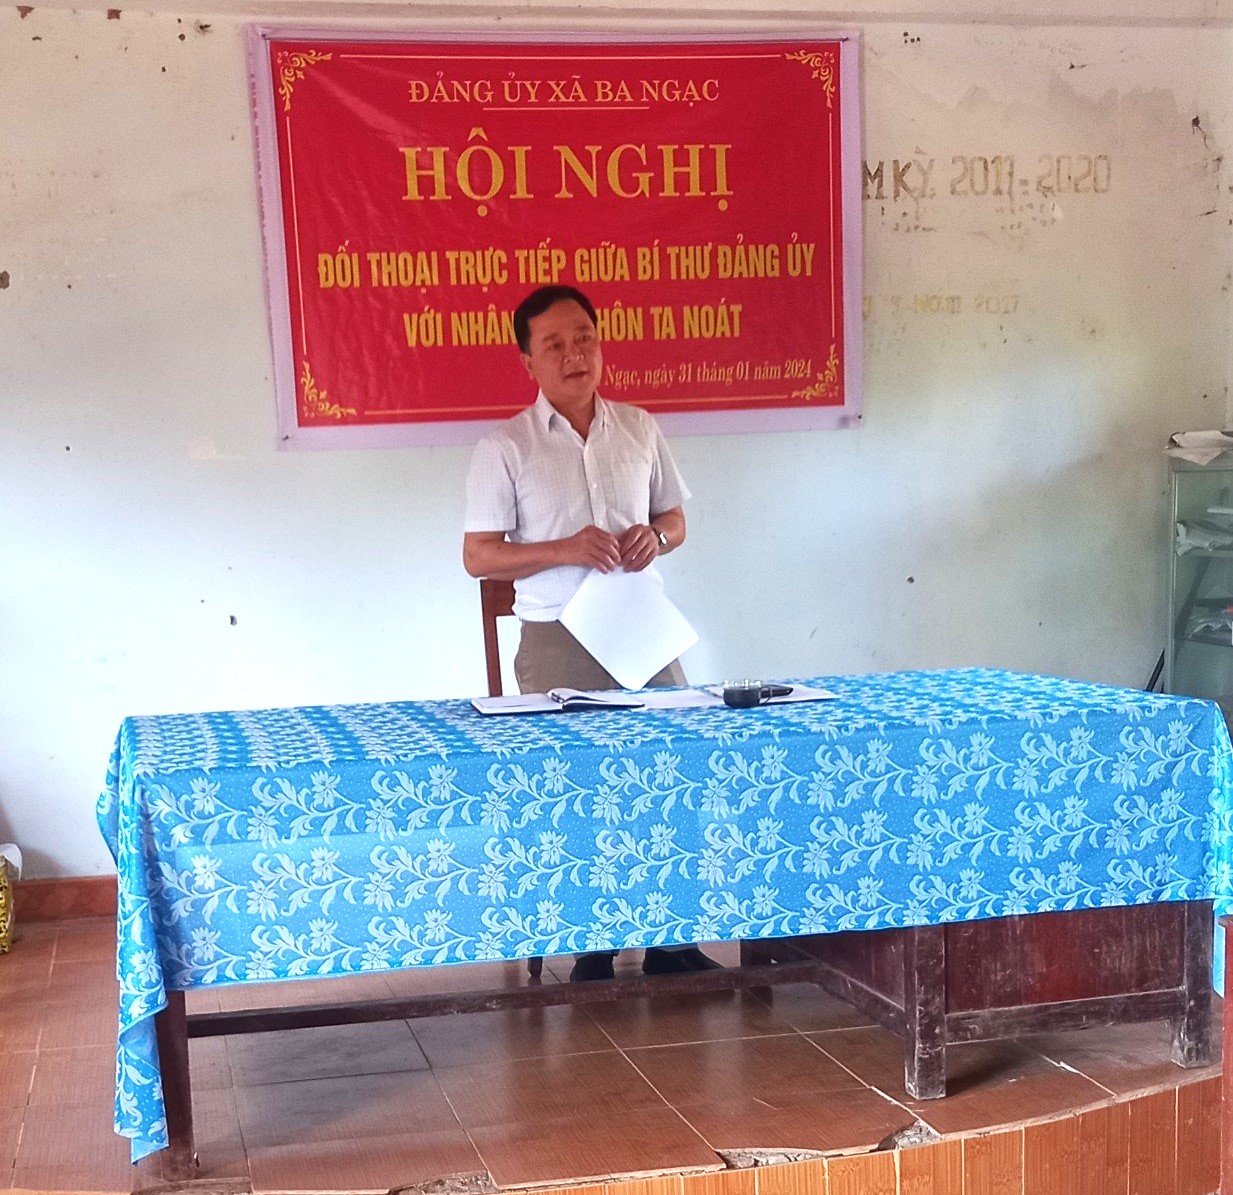 Đảng ủy xã Ba Ngạc tổ chức Hội nghị đối thoại trực tiếp giữa Bí thư Đảng ủy với nhân dân thôn Ta Noát